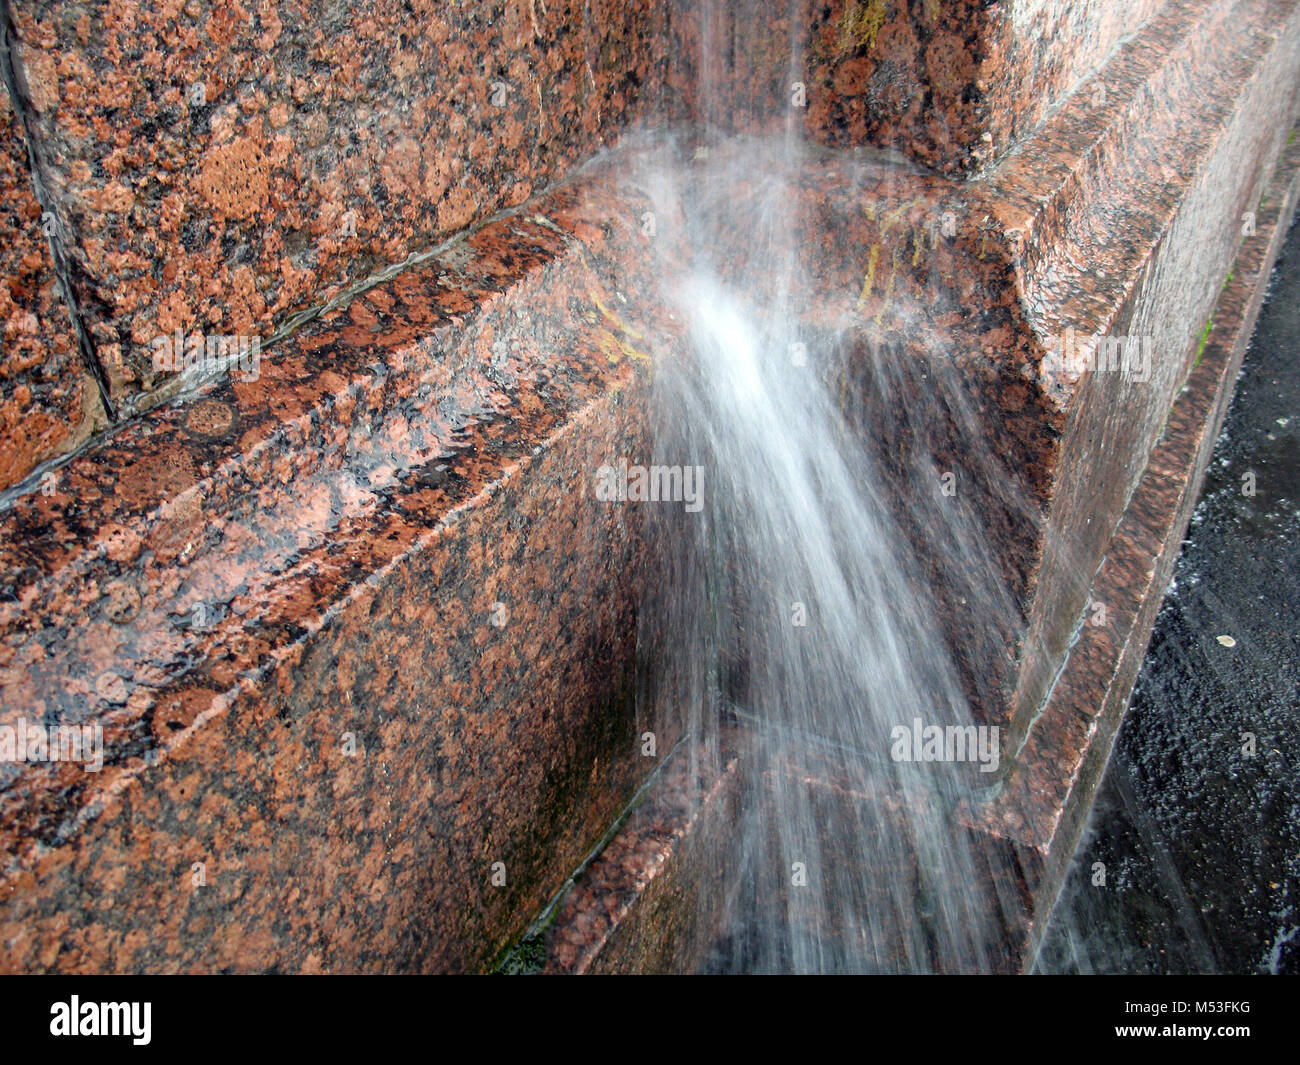 Ein starker Strahl Wasser aus dem abflußrohr auf der granitmauer während der regensturm Stockfoto